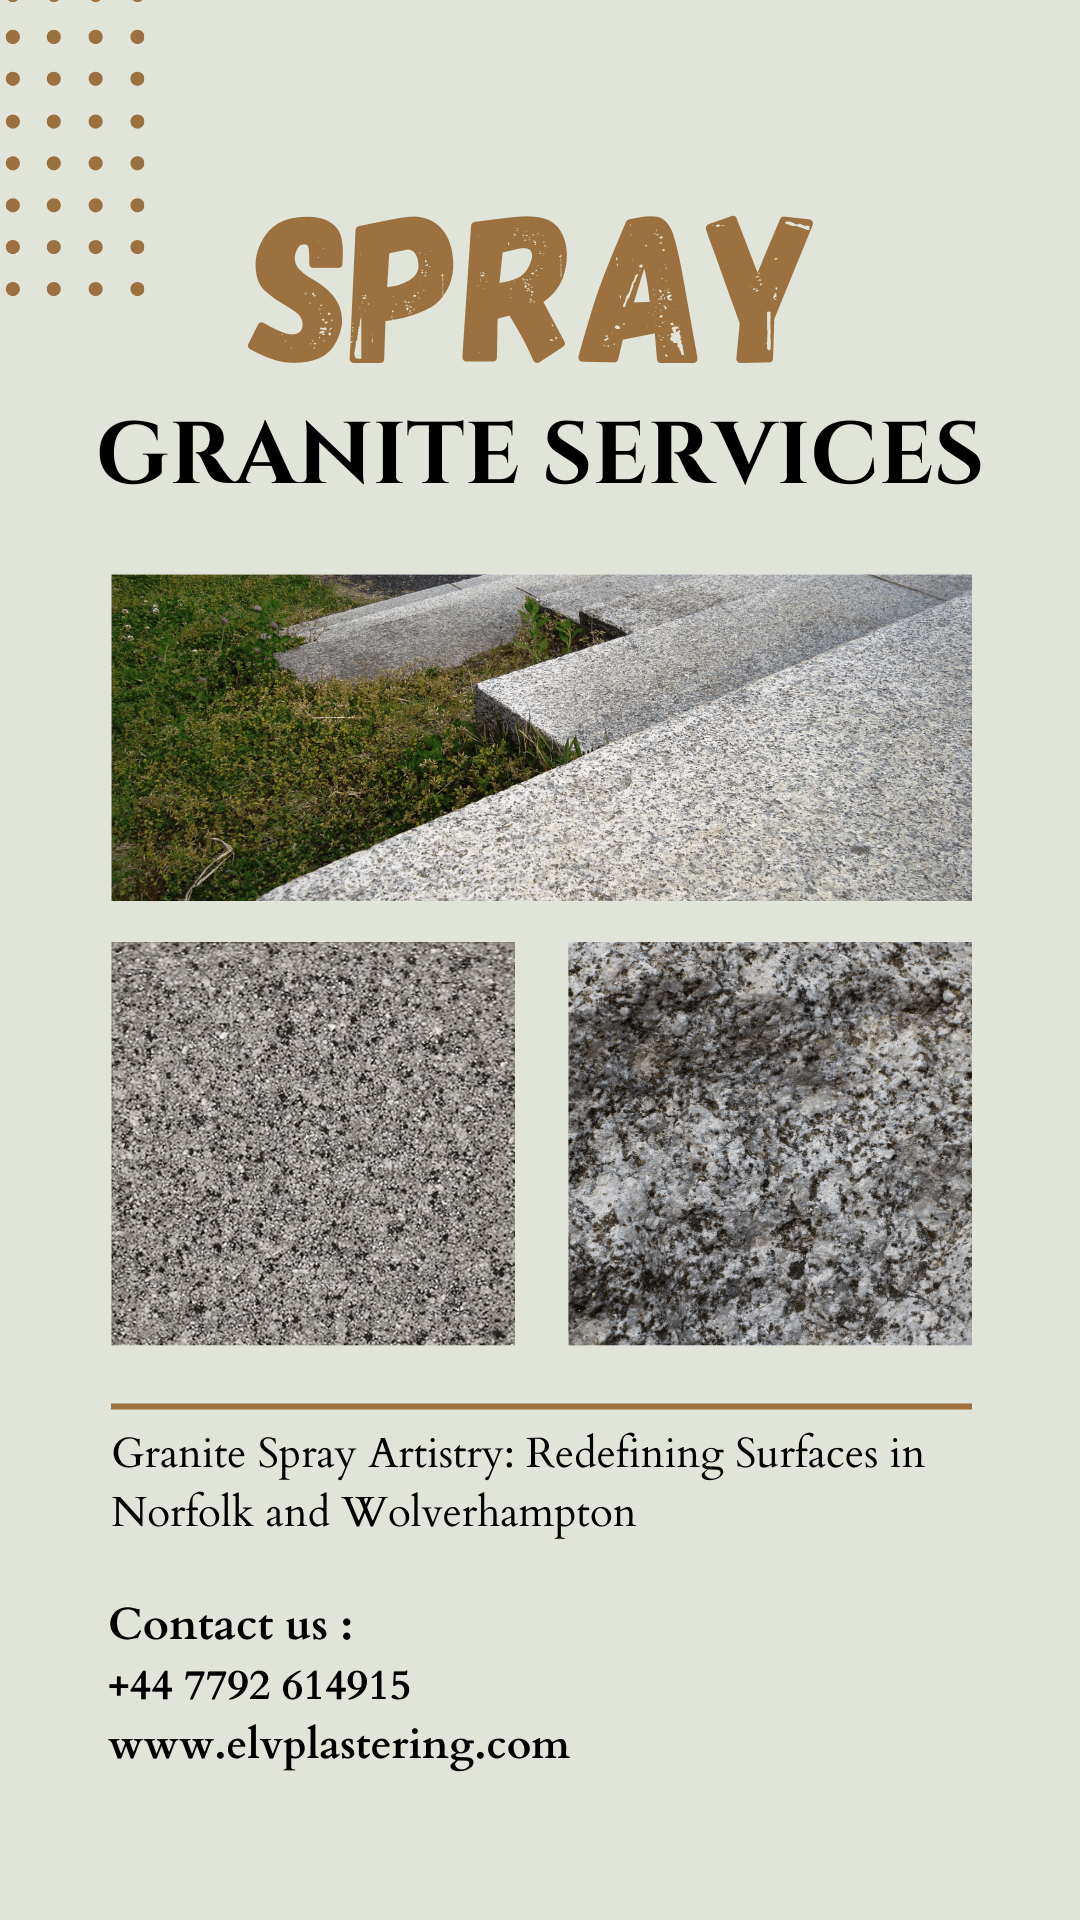 Spray Granite